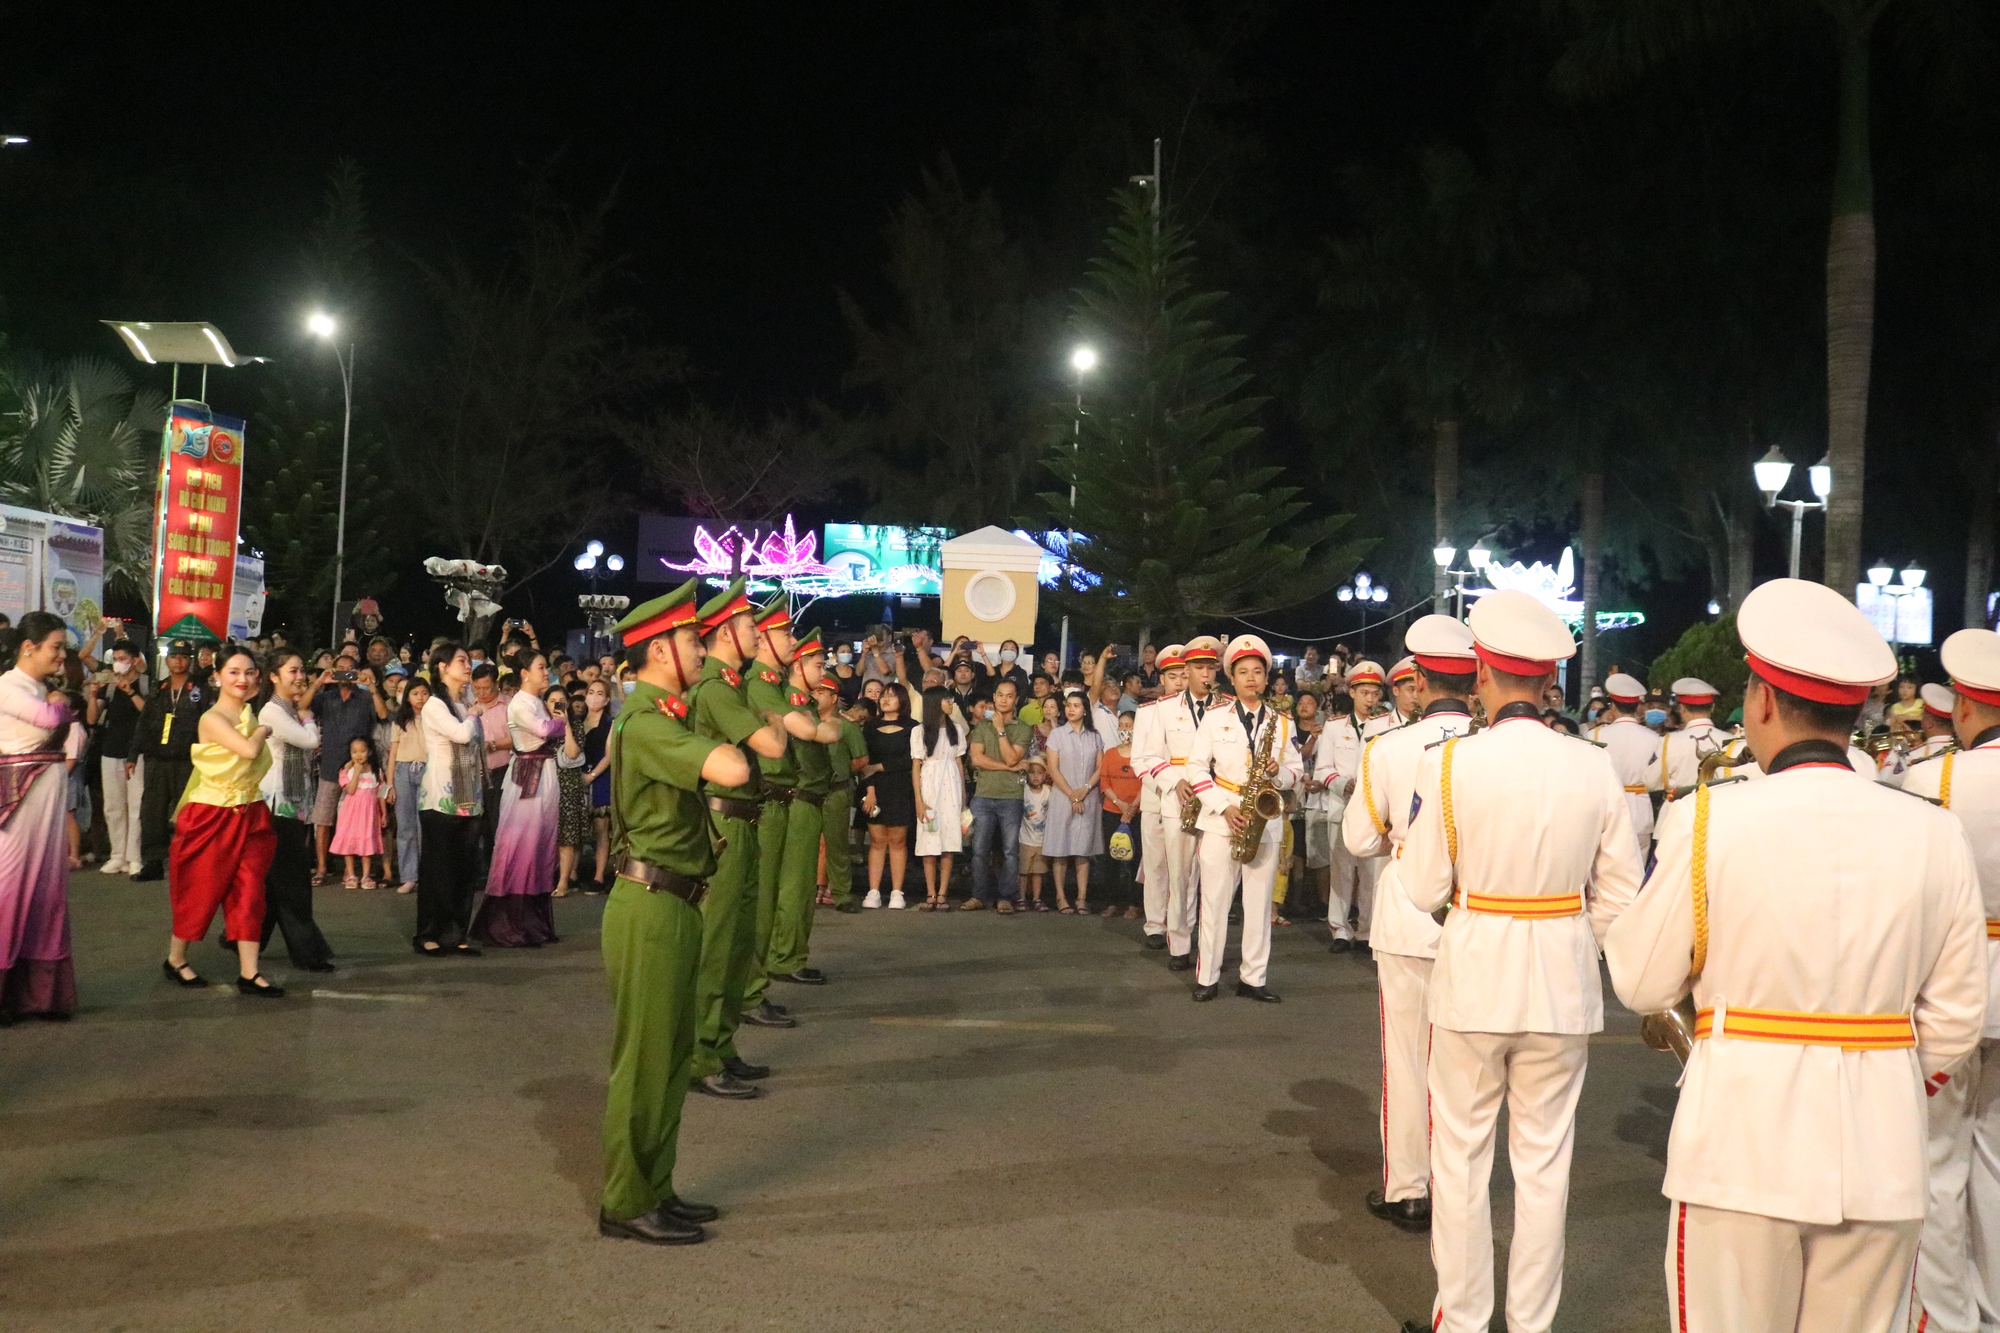 CLIP: Đoàn nghi lễ Công an nhân dân biểu diễn tại bến Ninh Kiều - Ảnh 4.